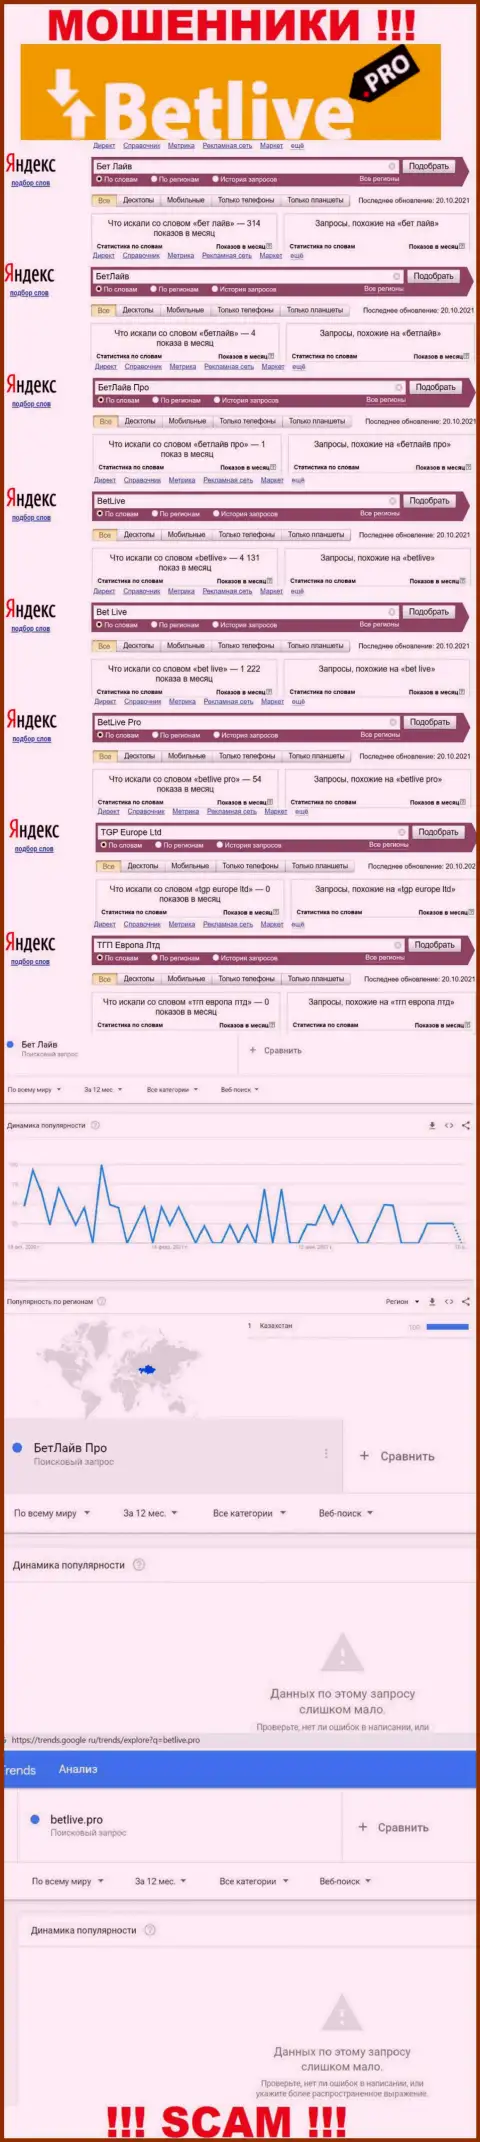 Статистические данные о запросах в поисковиках всемирной сети Интернет данных о конторе BetLive